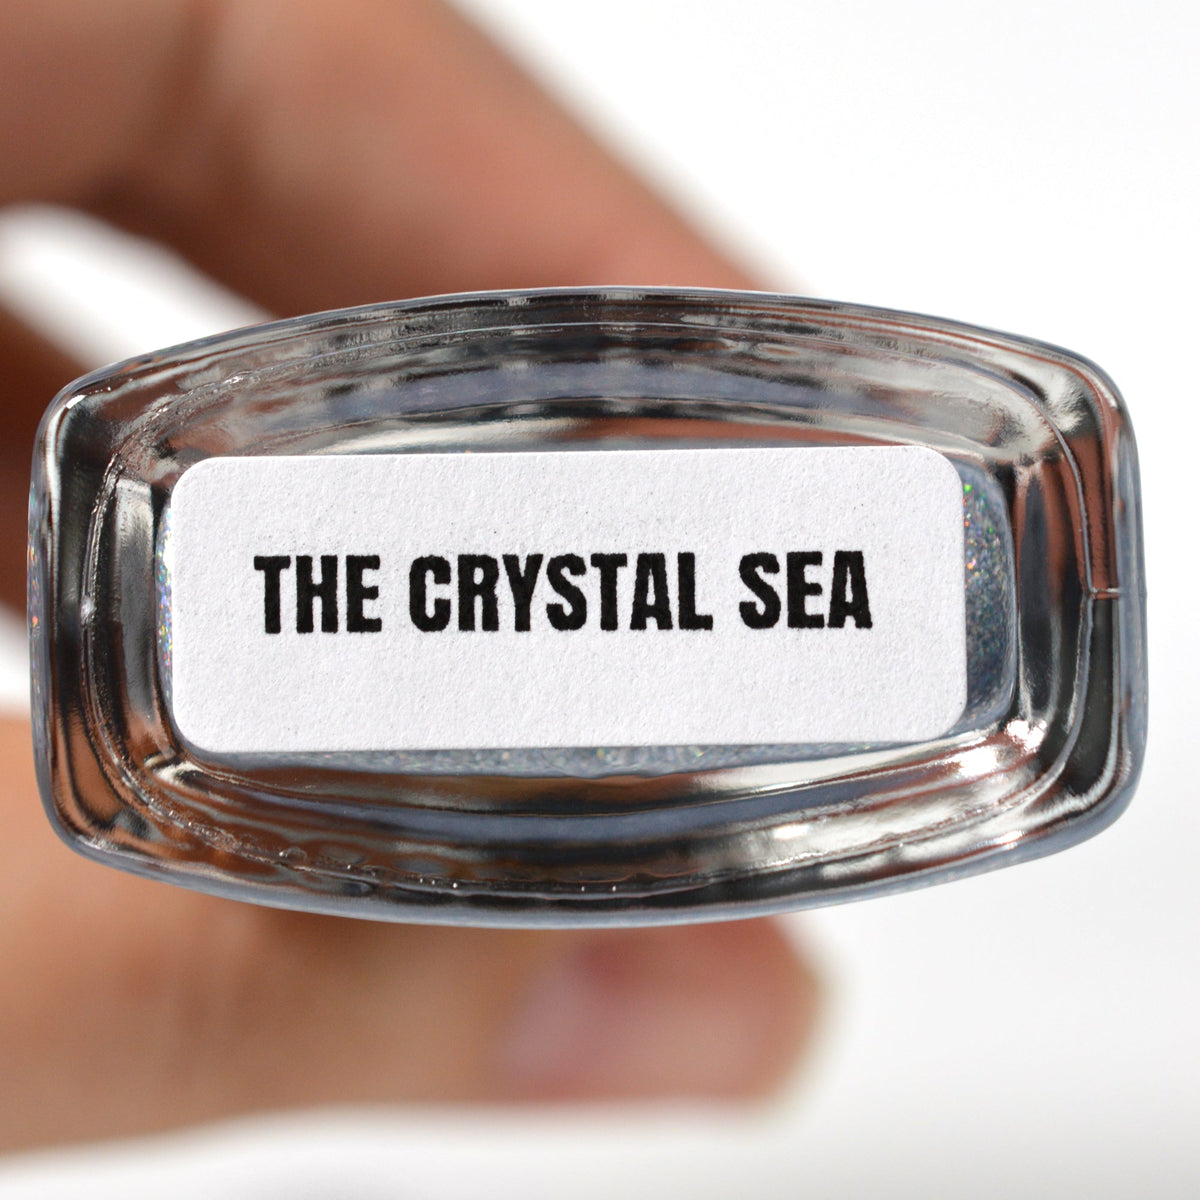 The Crystal Sea - Nail Polish - BLUSH